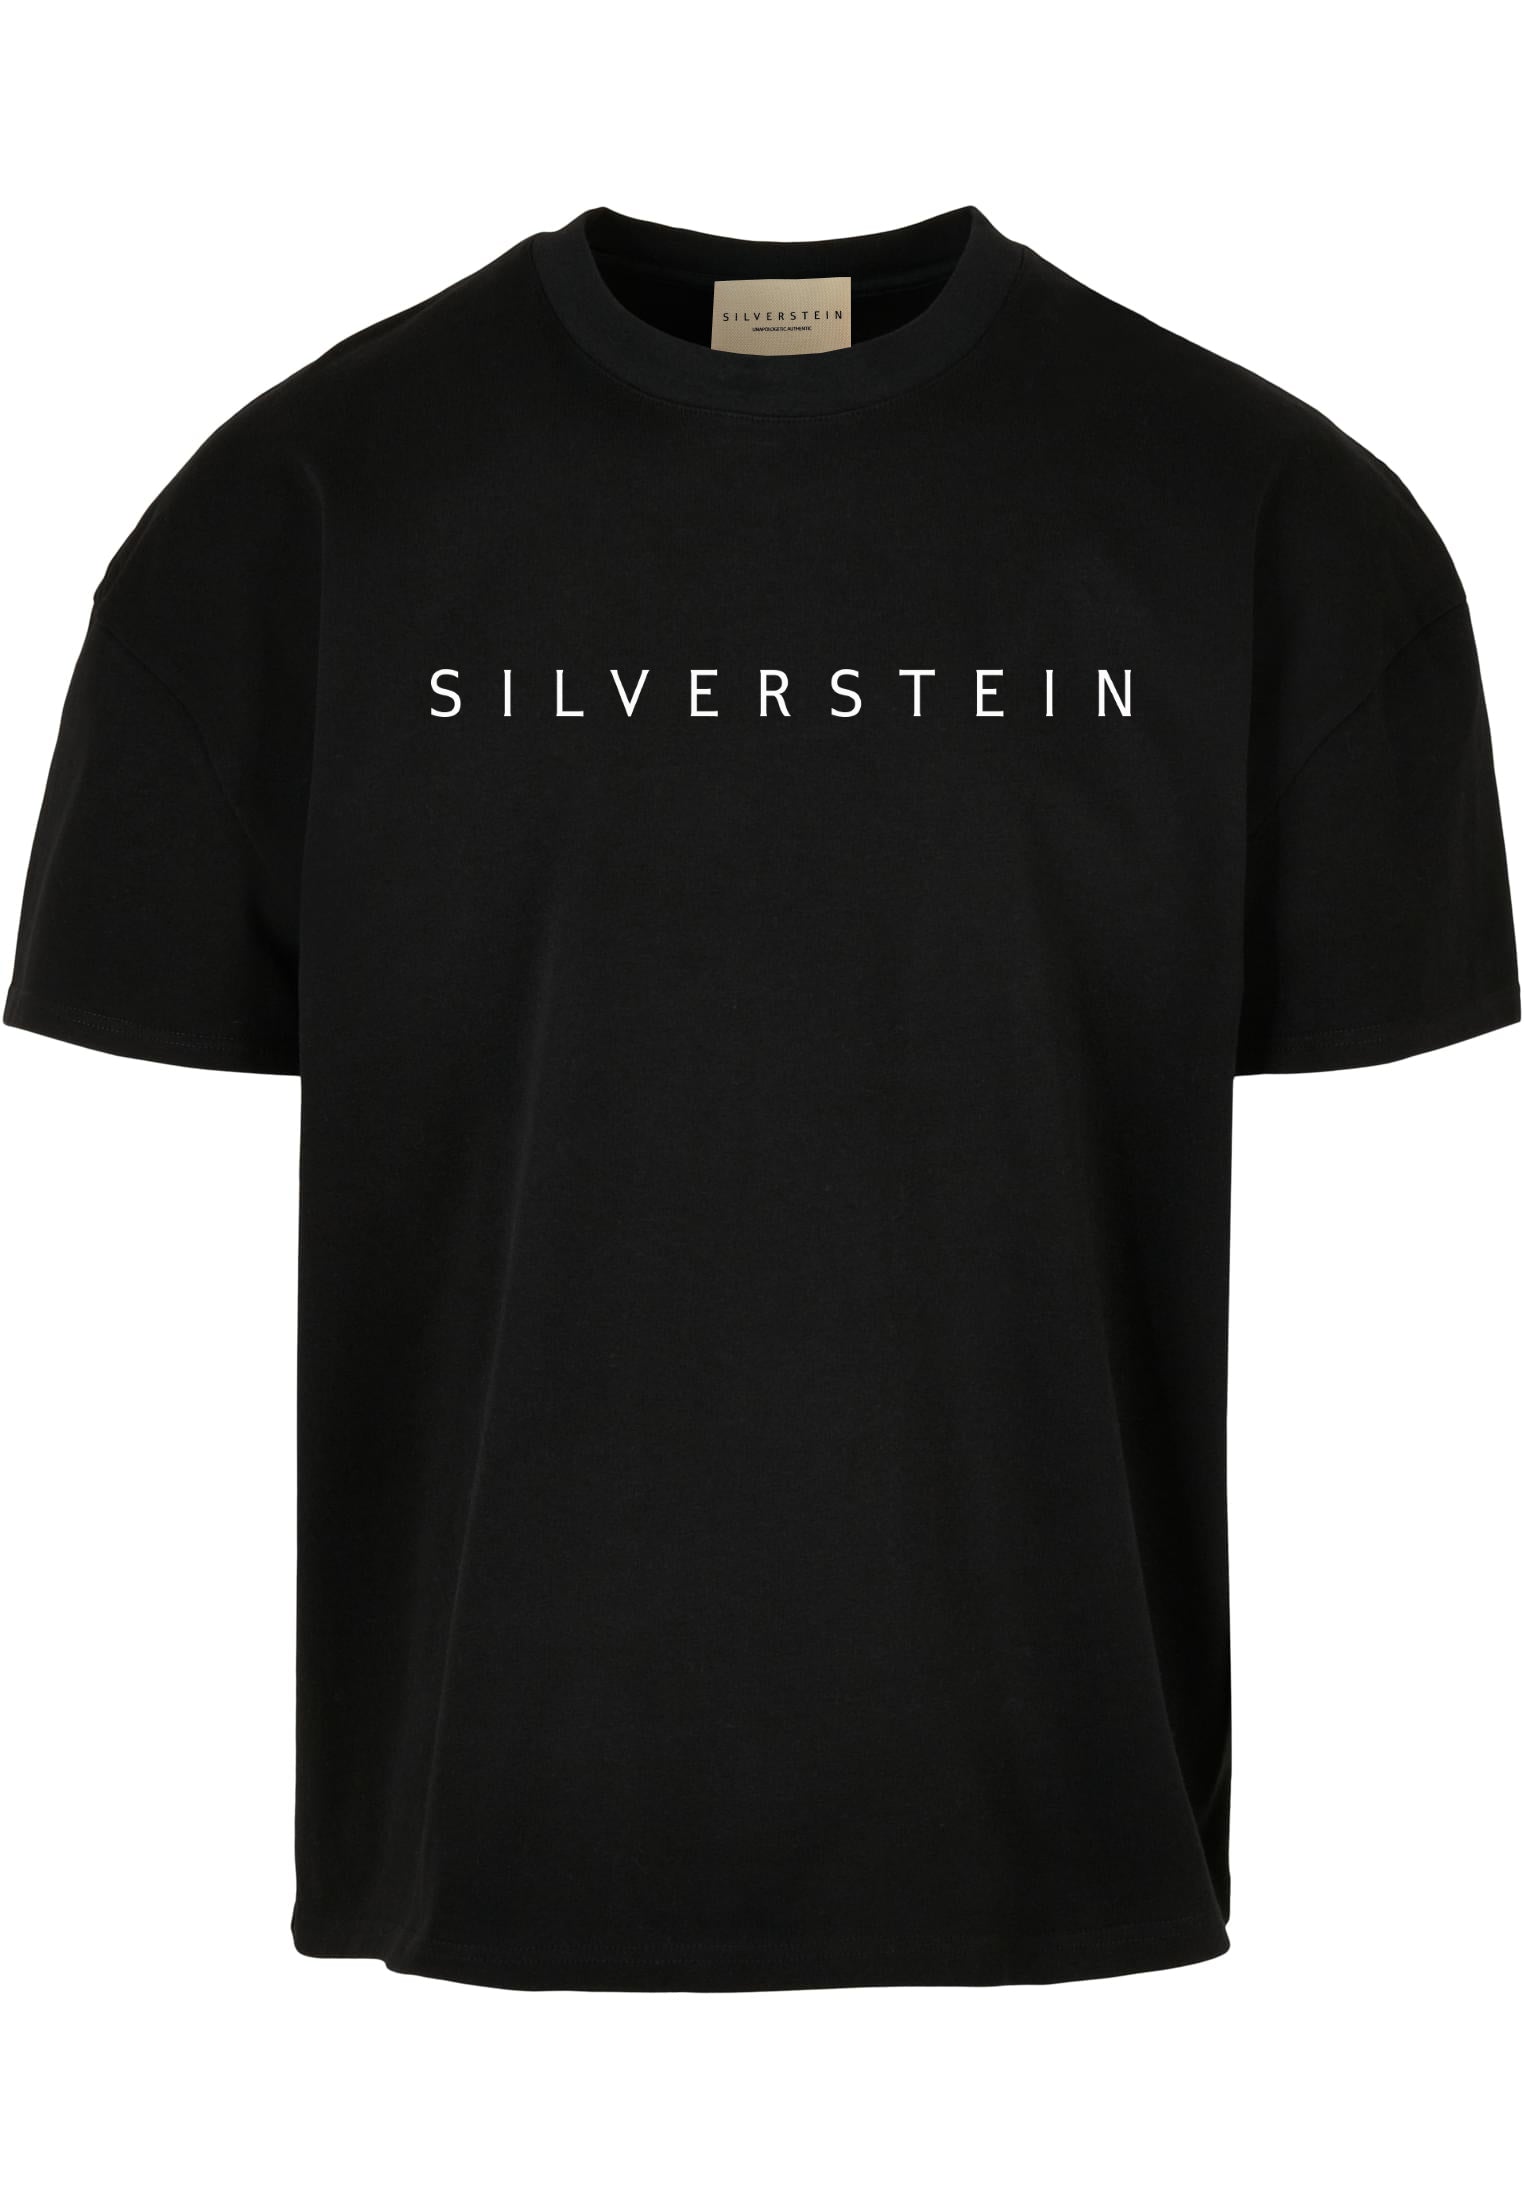 SILVERSTEIN "ORG Black" T-Shirt